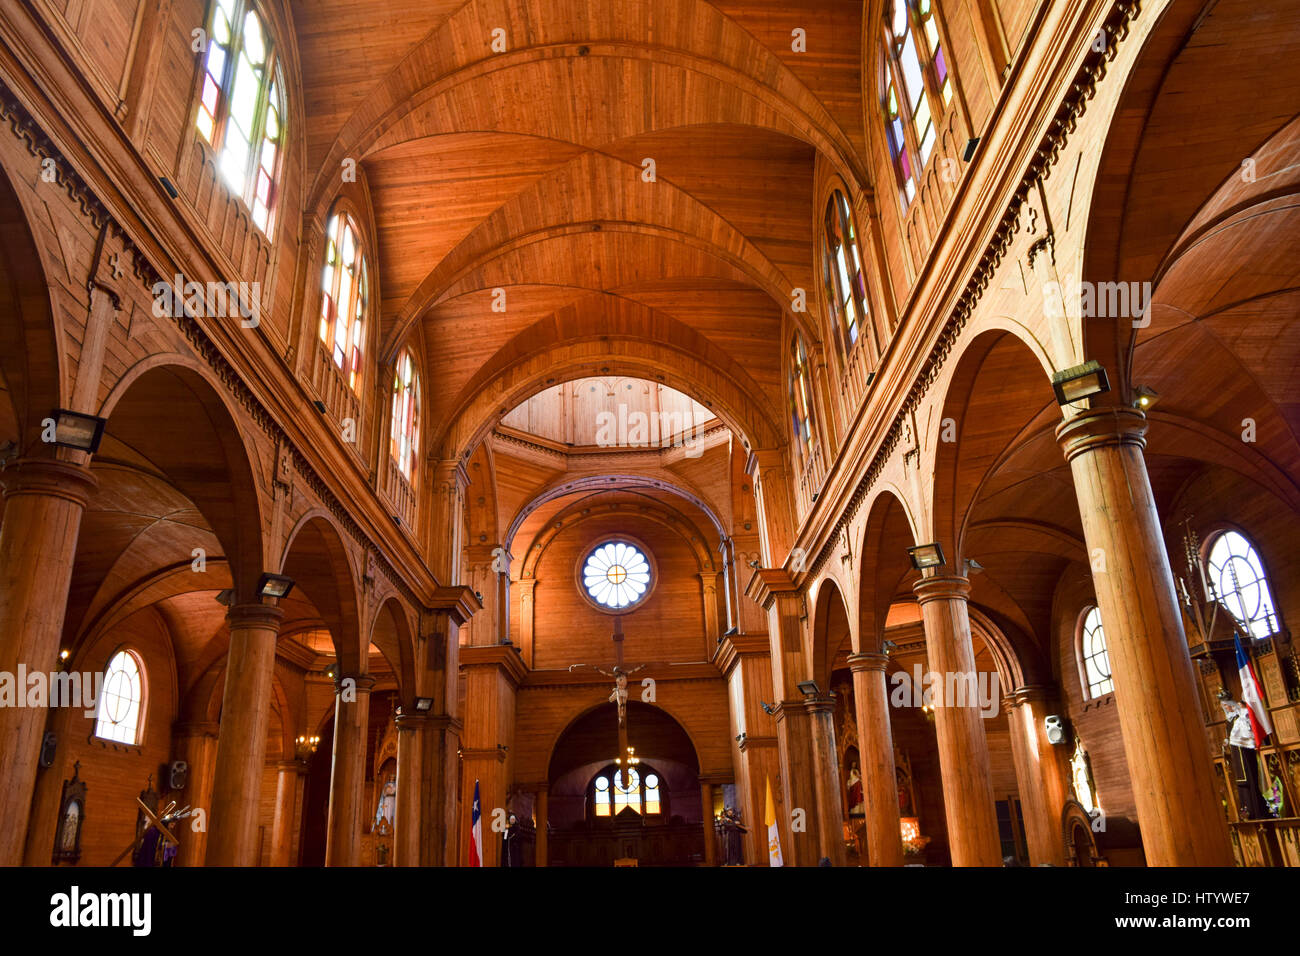 Interno della chiesa in legno di CASTRO, Cile. Foto Stock